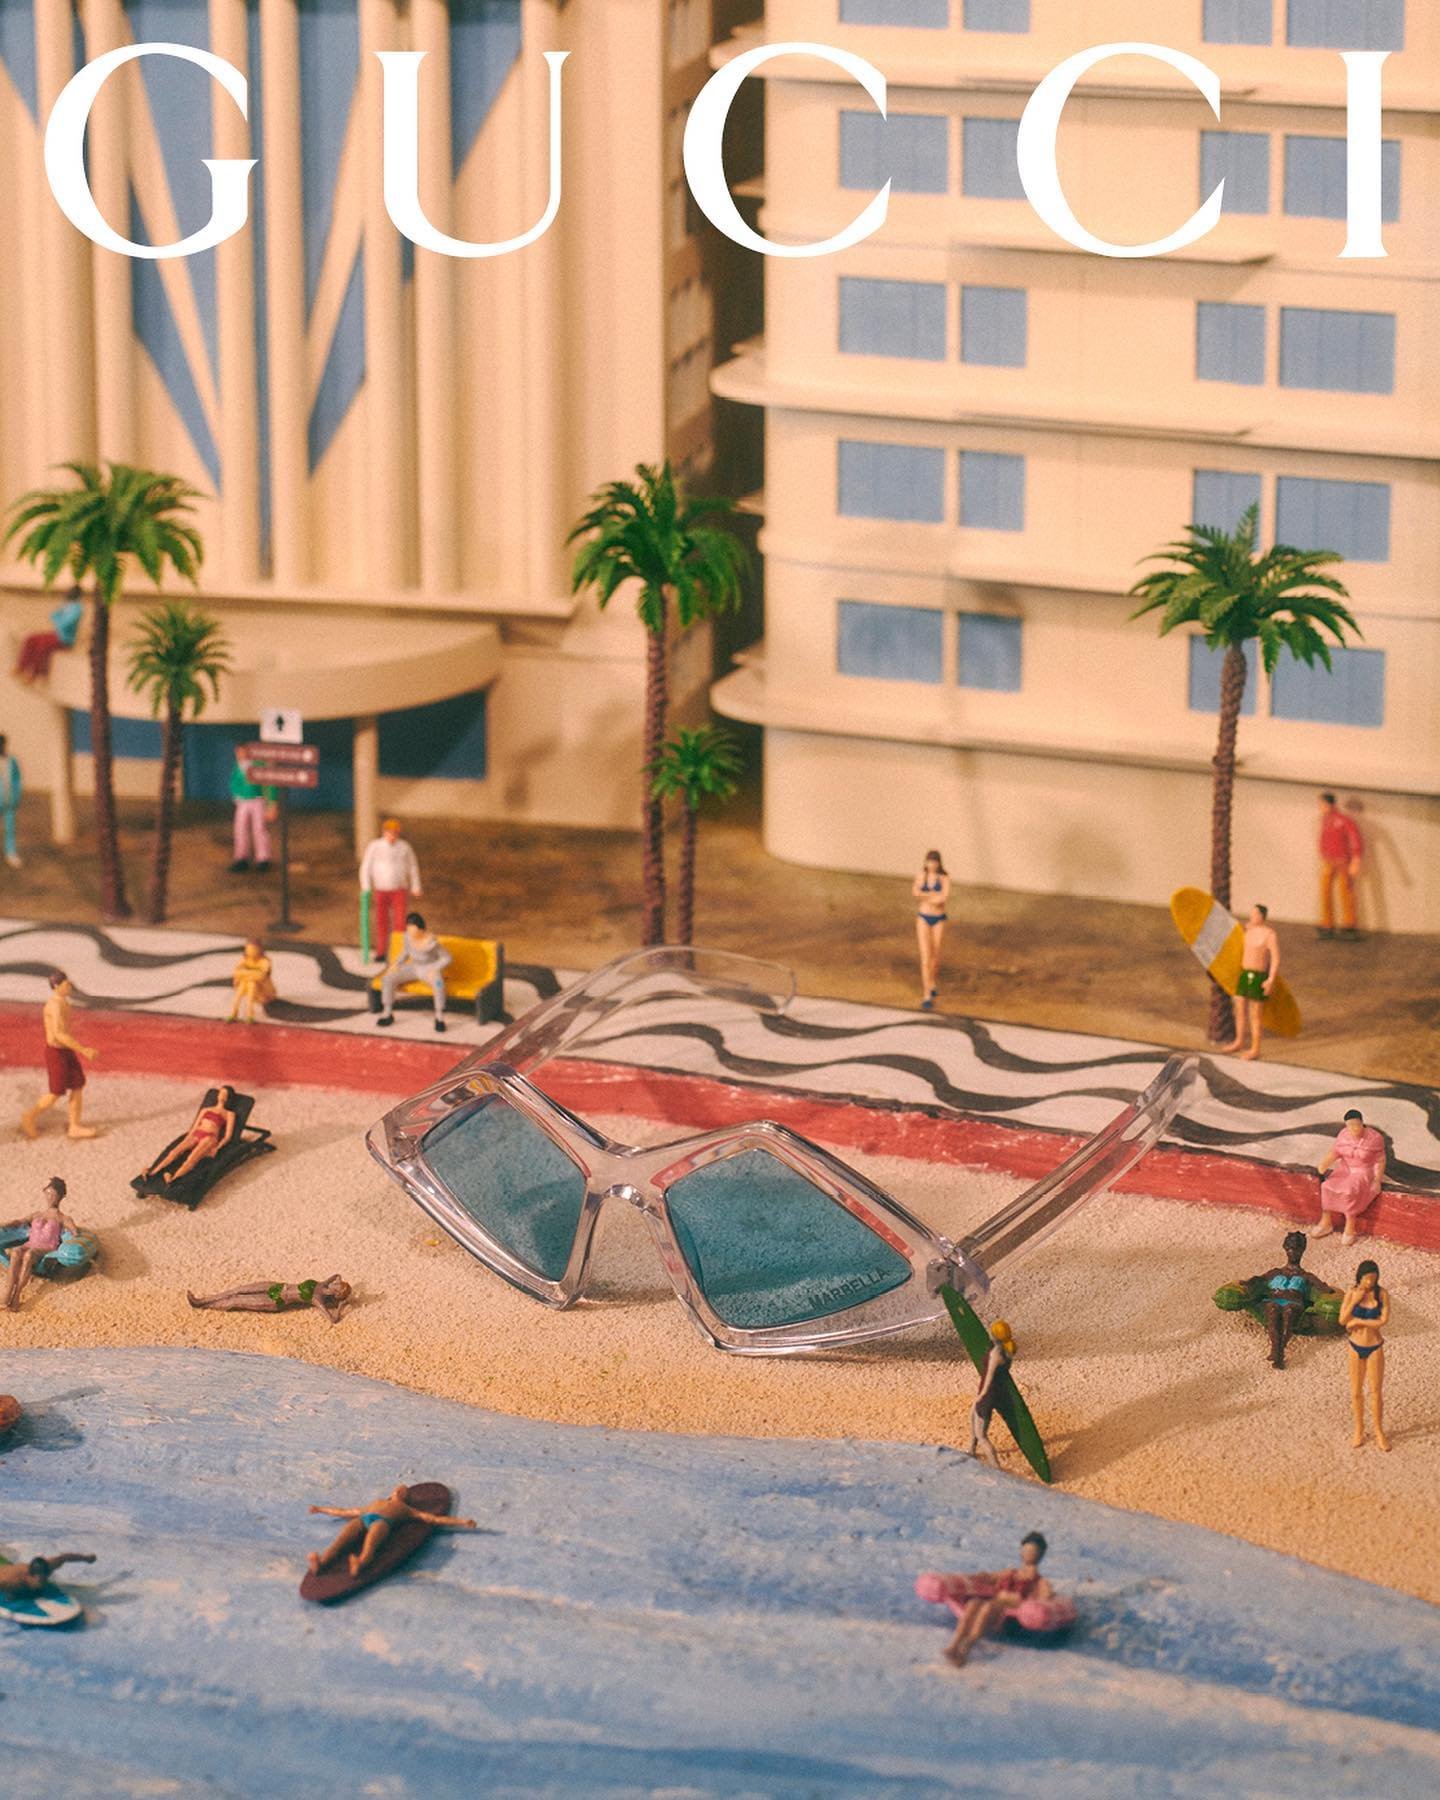 Gucci-Resort-2022-by-Max-Siedentopf (20).jpg